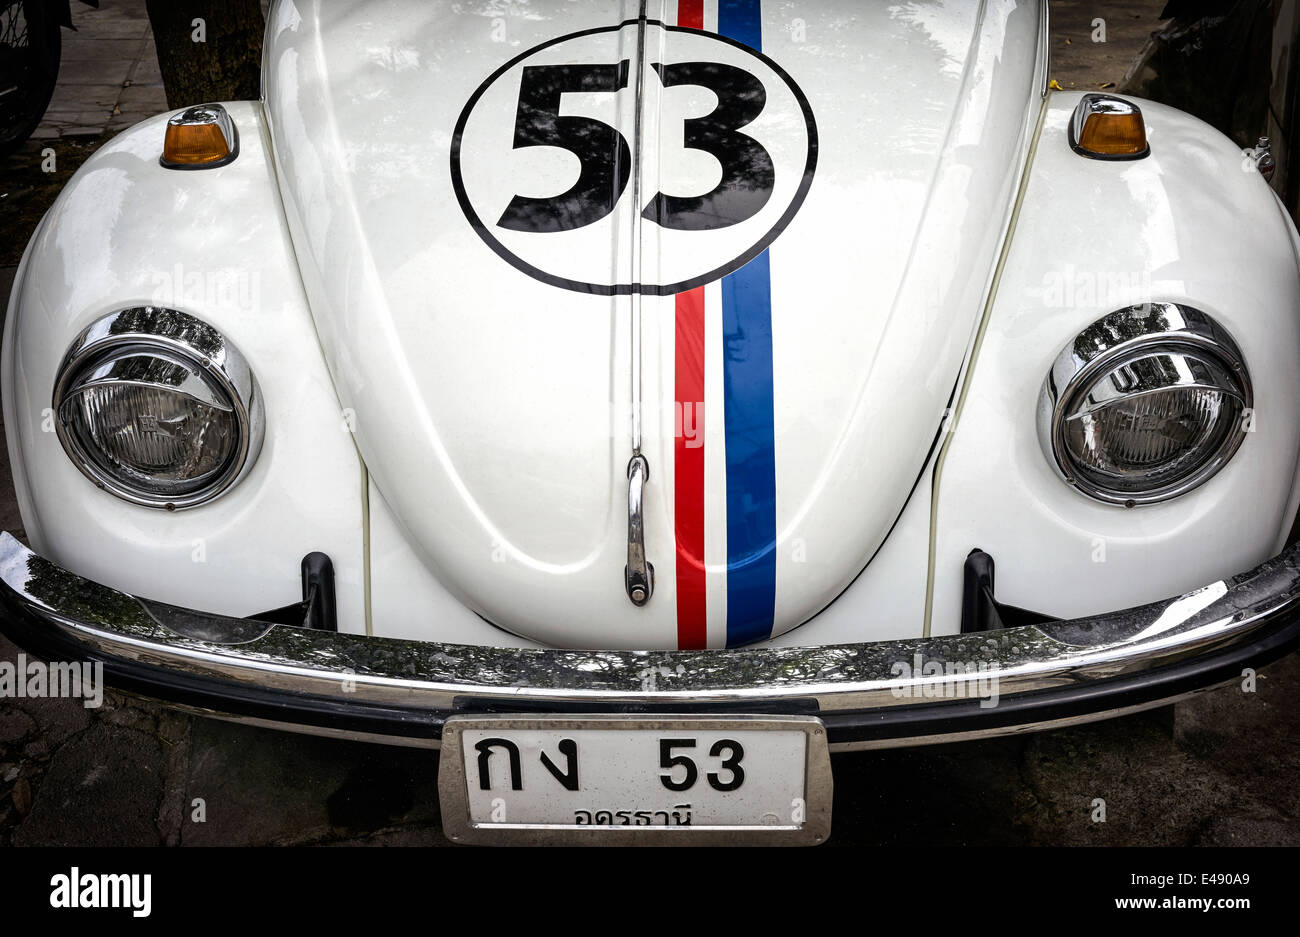 Herbie. Volkswagen Beetle icónico coche de motor como aparece en las películas 'Herbie' de Disney con matrícula y rayas apropiadas Foto de stock